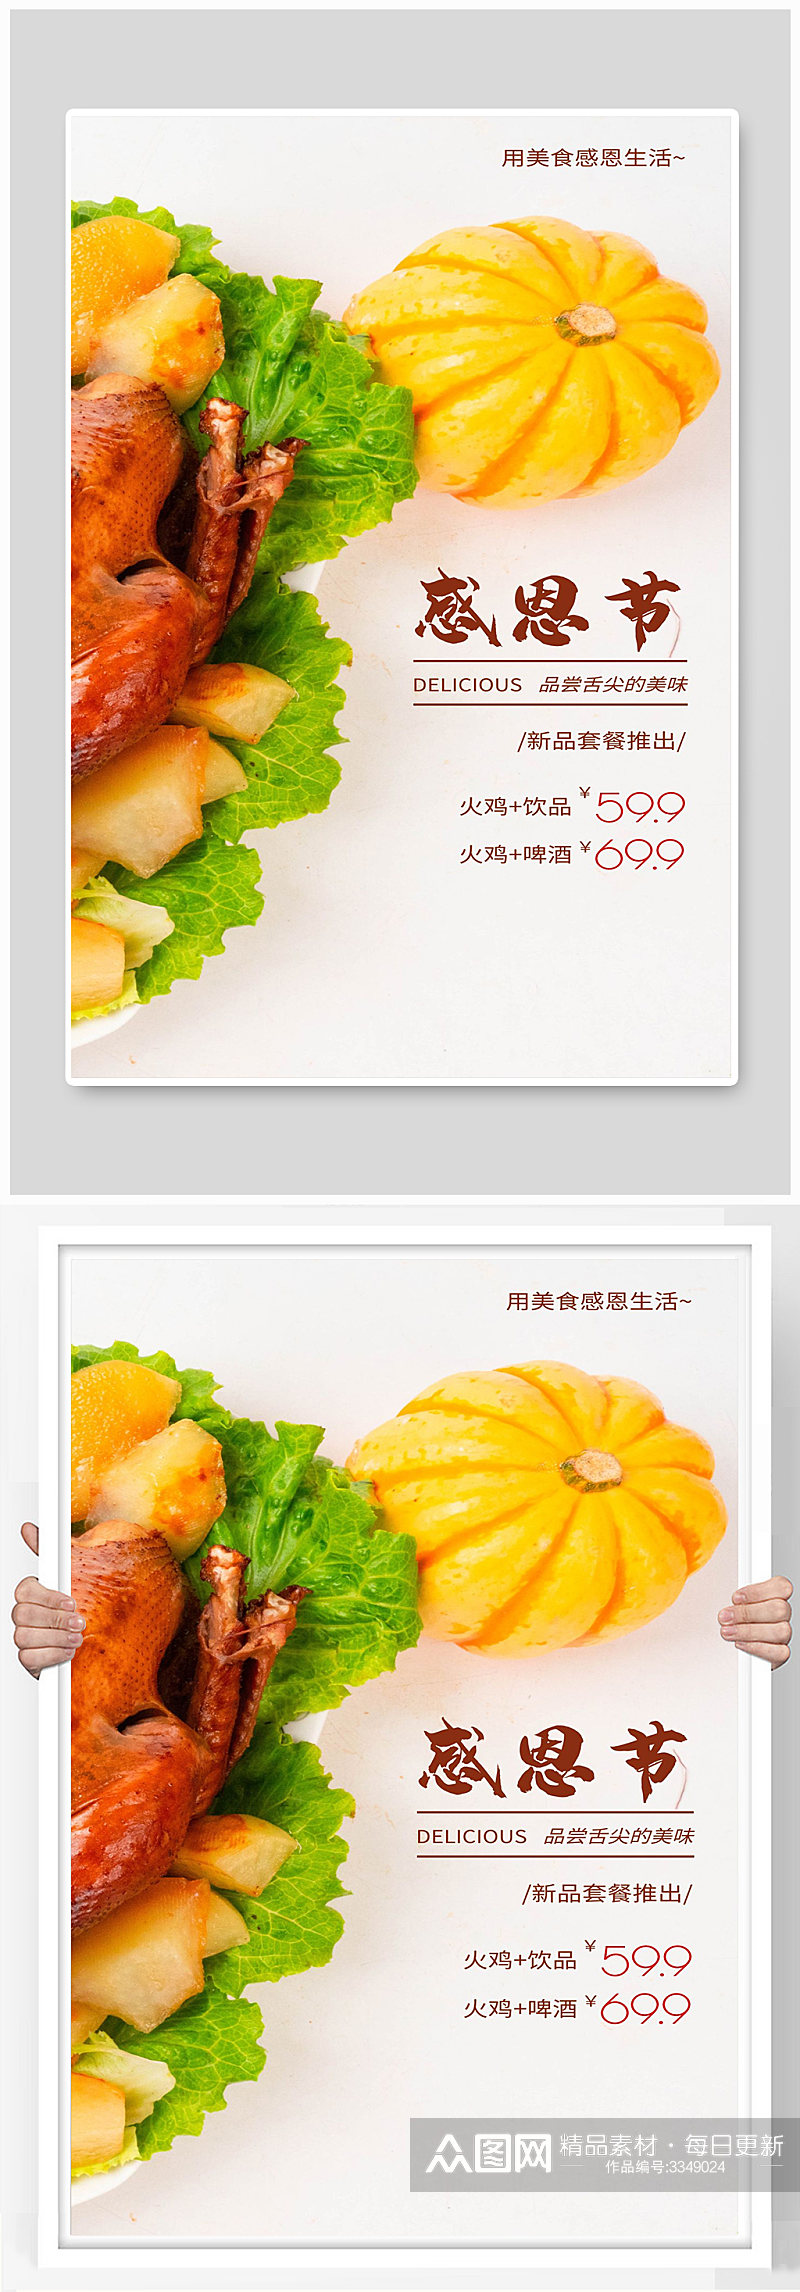 美食感恩生活烤鸡火鸡感恩节宣传海报素材